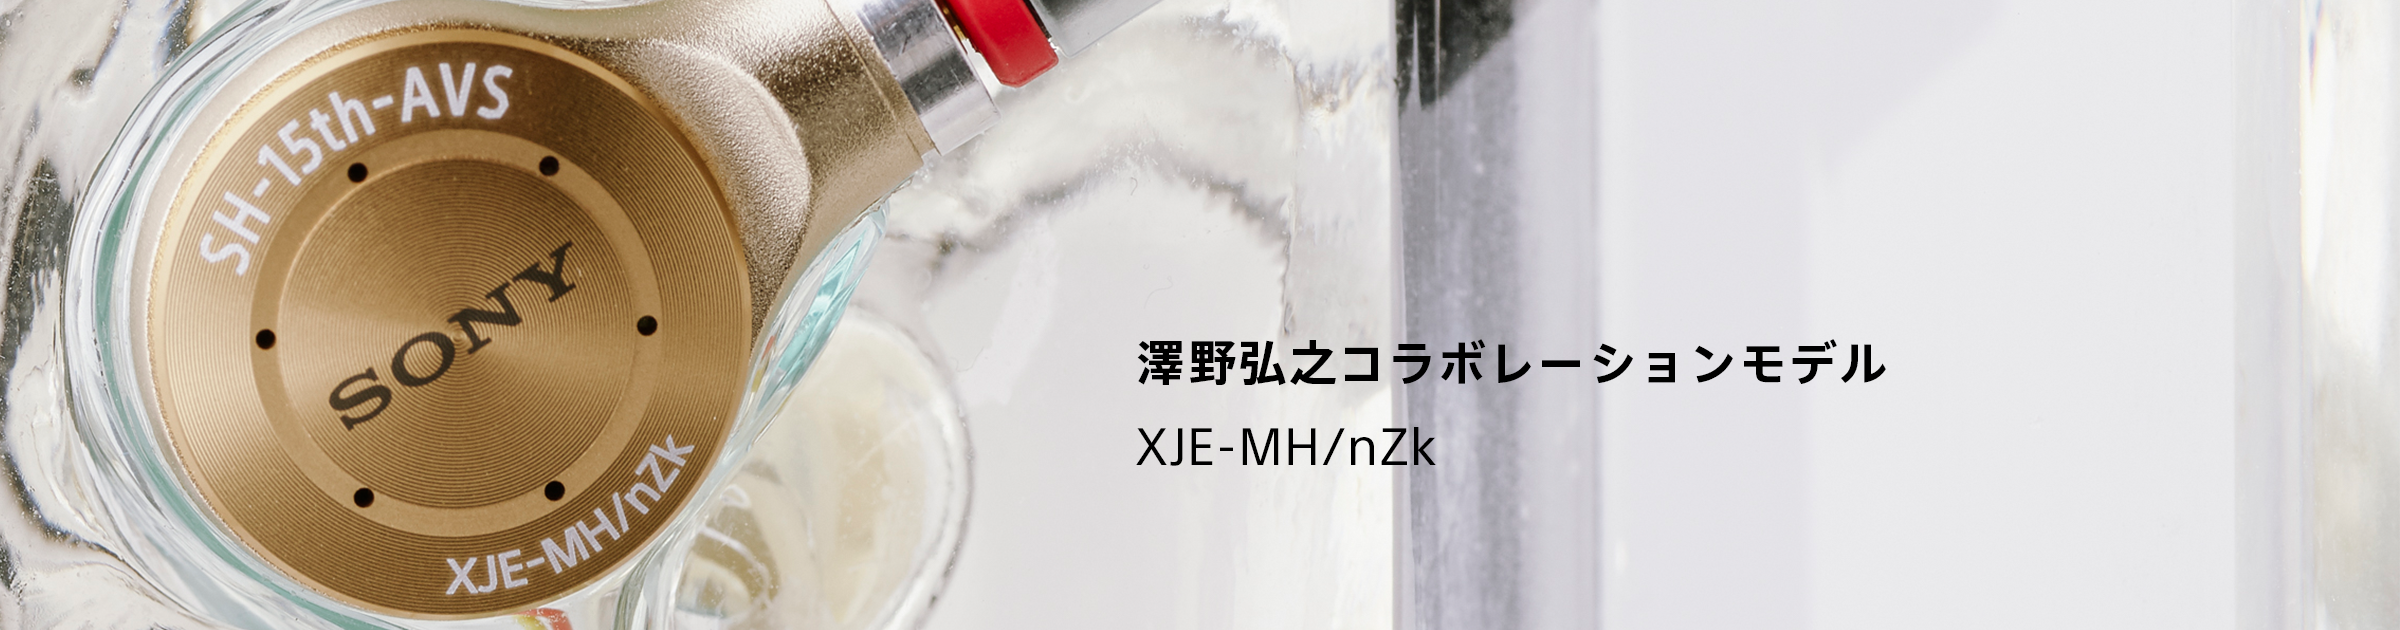 澤野弘之コラボレーションモデル XJE-MH/nZk